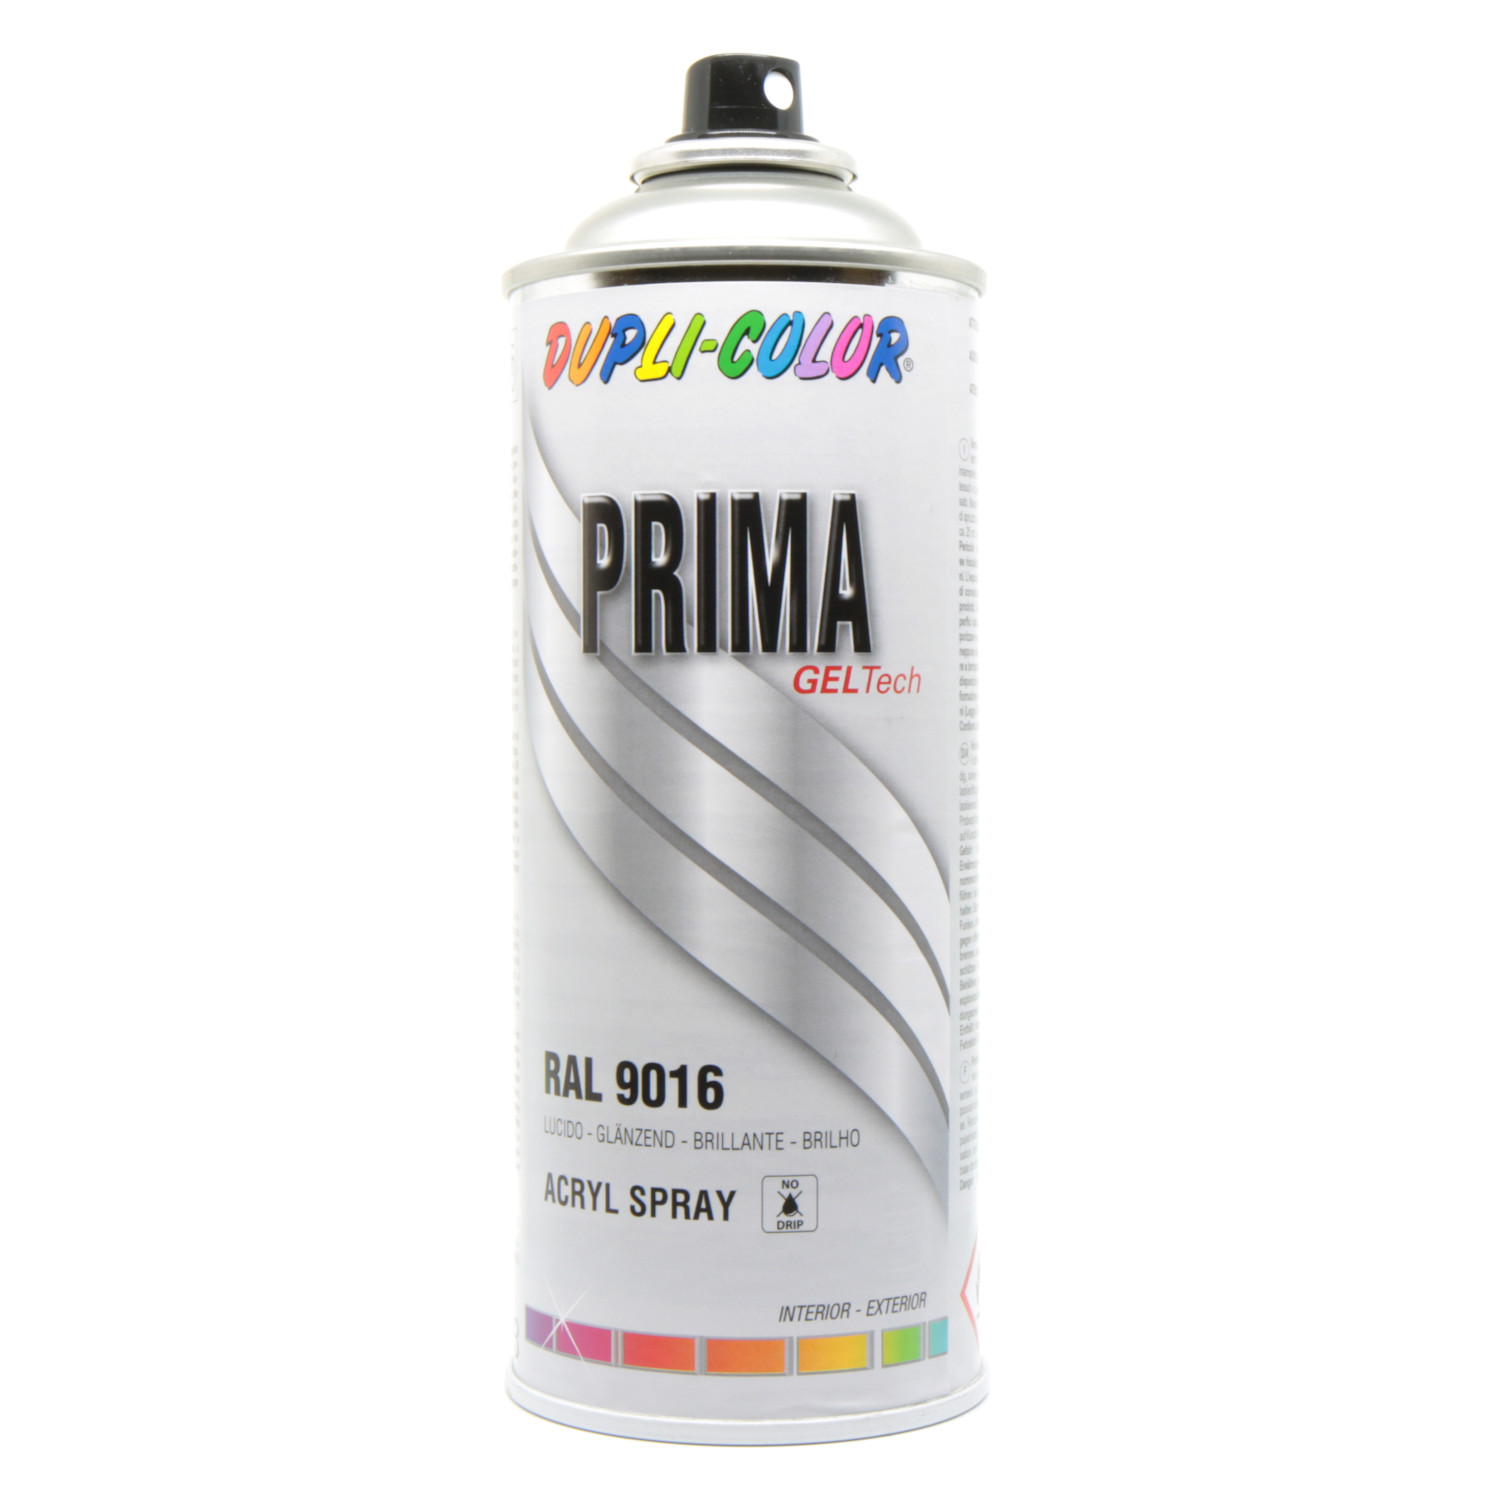 Vernice spray 150 ml DUPLI-COLOR per Fiat bianco 268/A ref. 392337 - Norauto